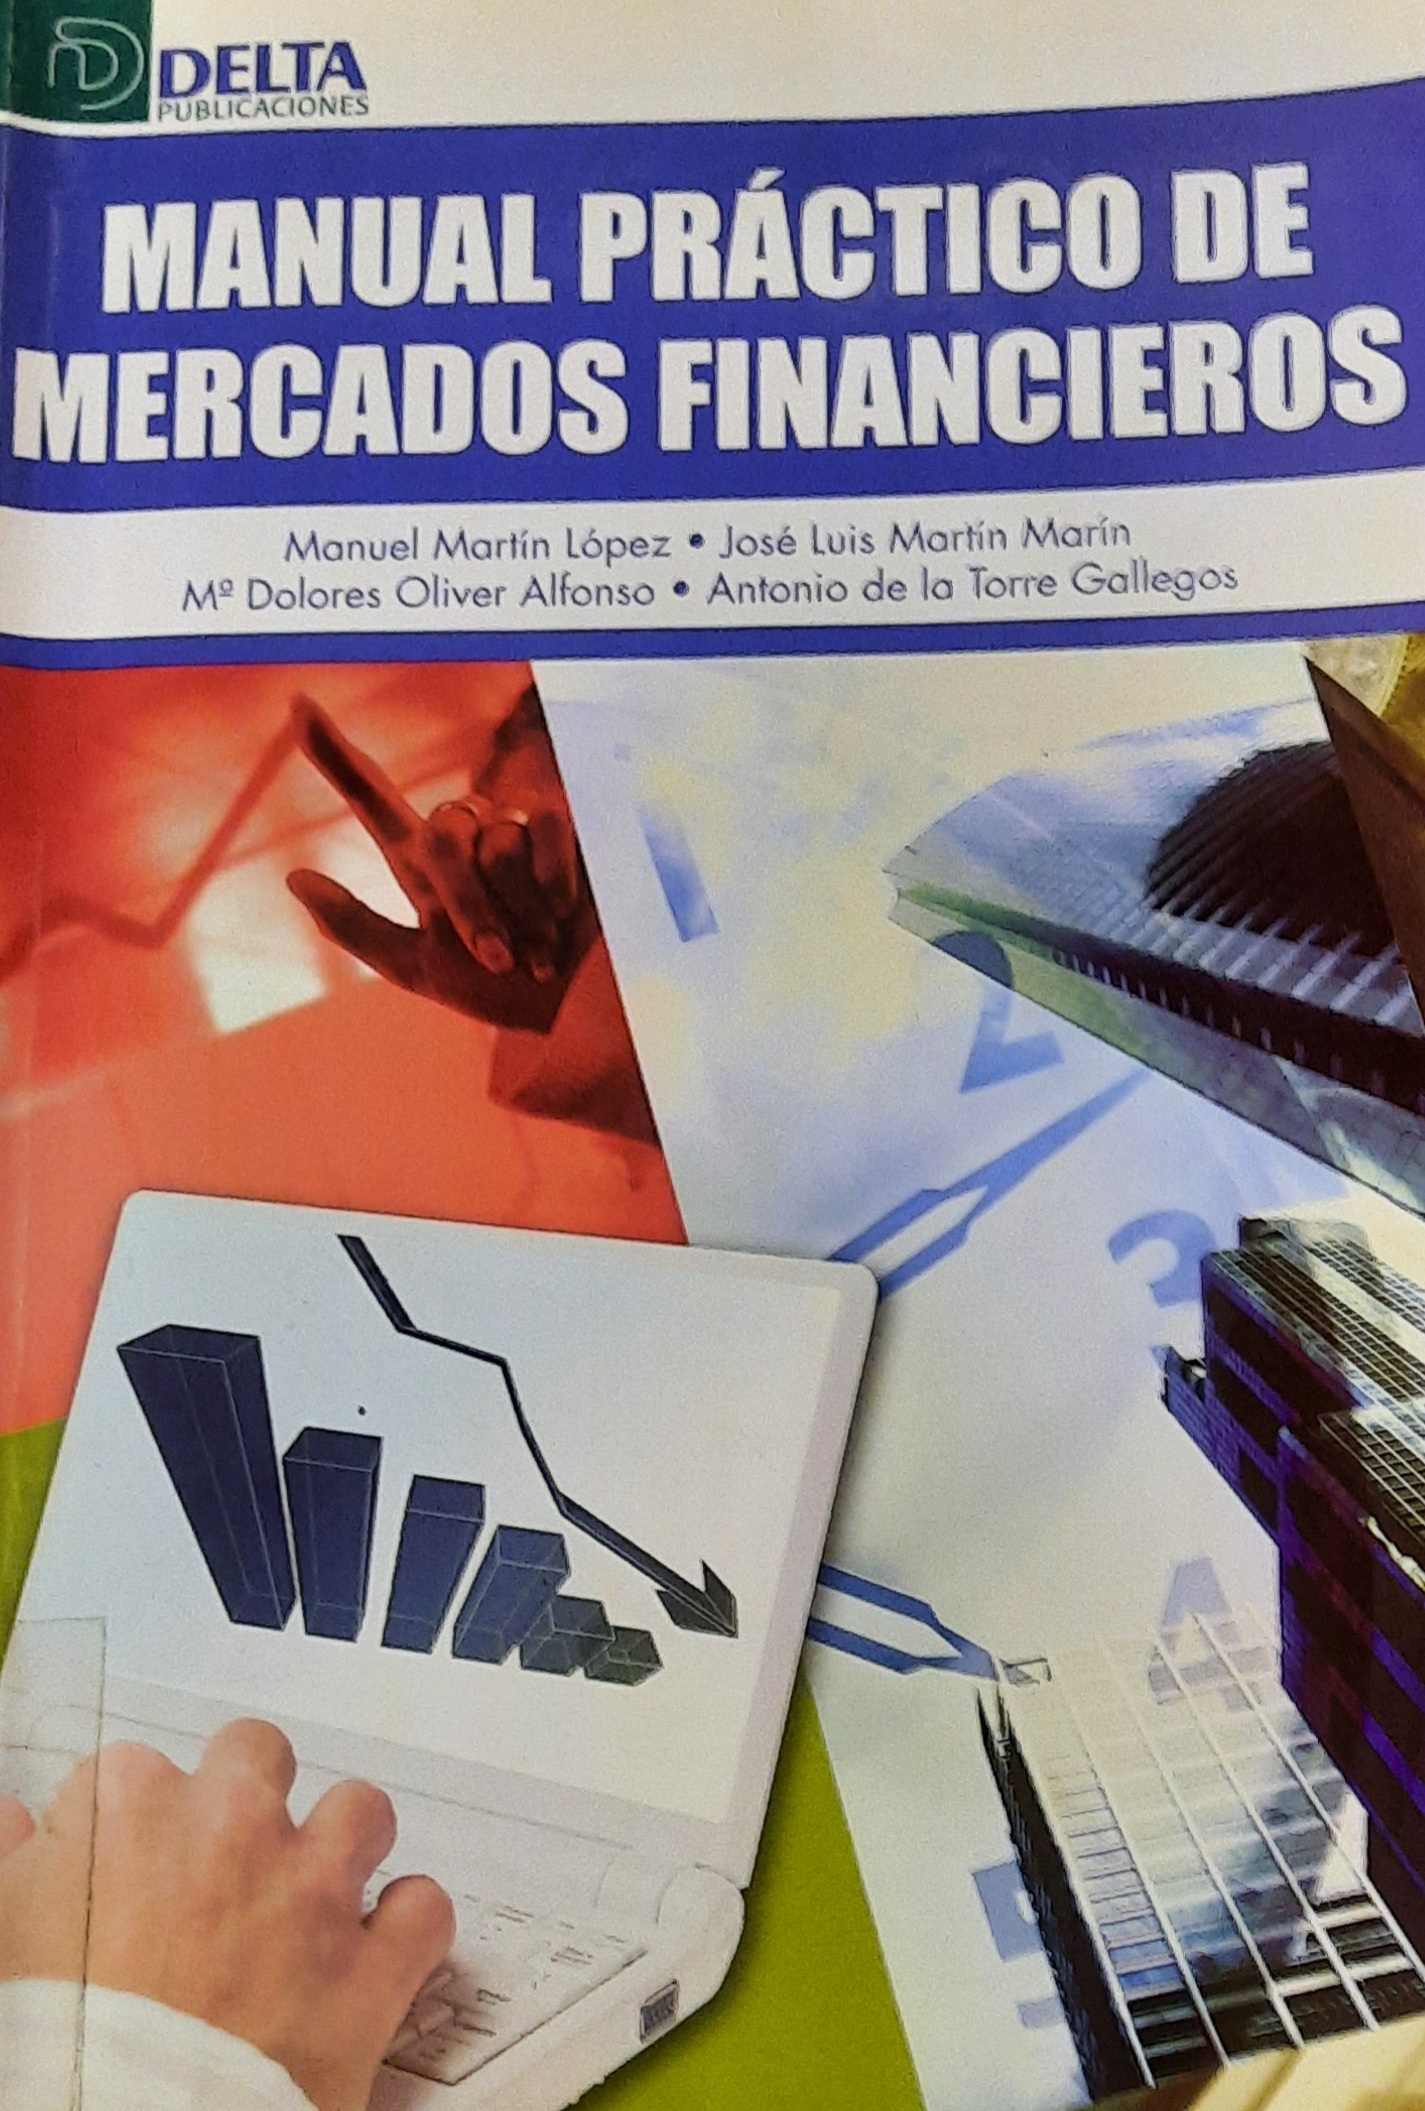 Imagen de portada del libro Manual práctico de mercados financieros.